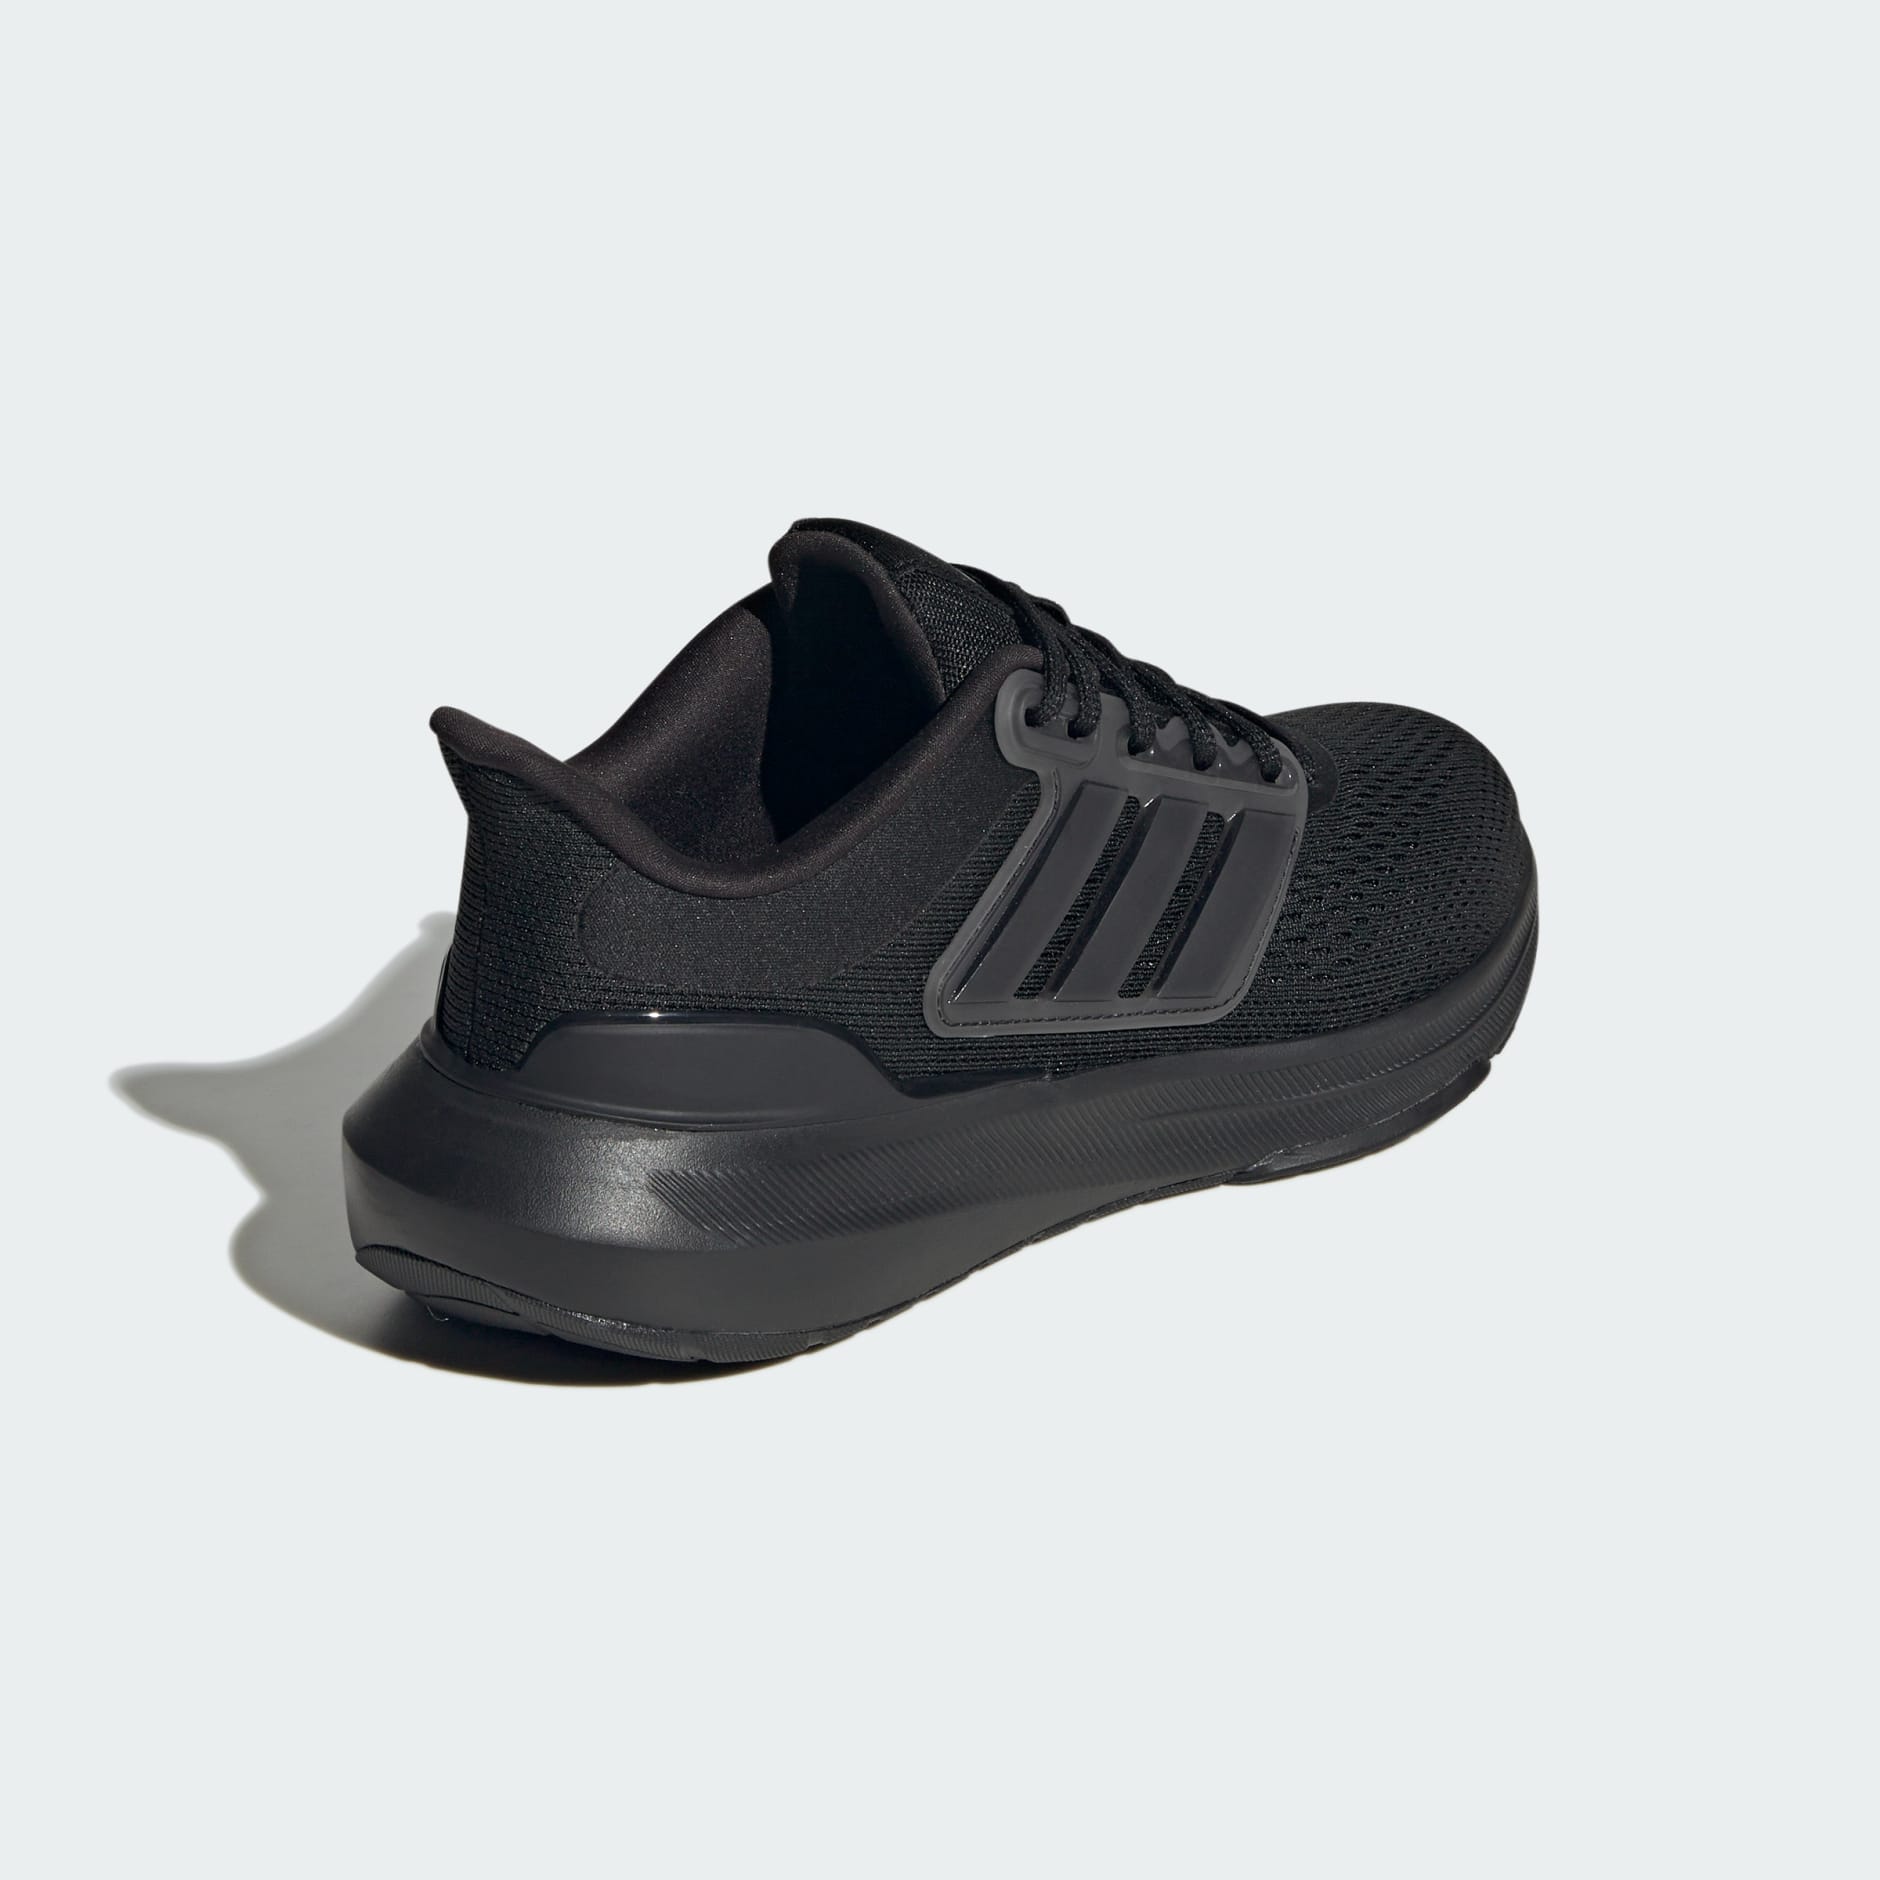 Jadeo Pensativo confiar adidas Ultrabounce Shoes - Black | adidas OM